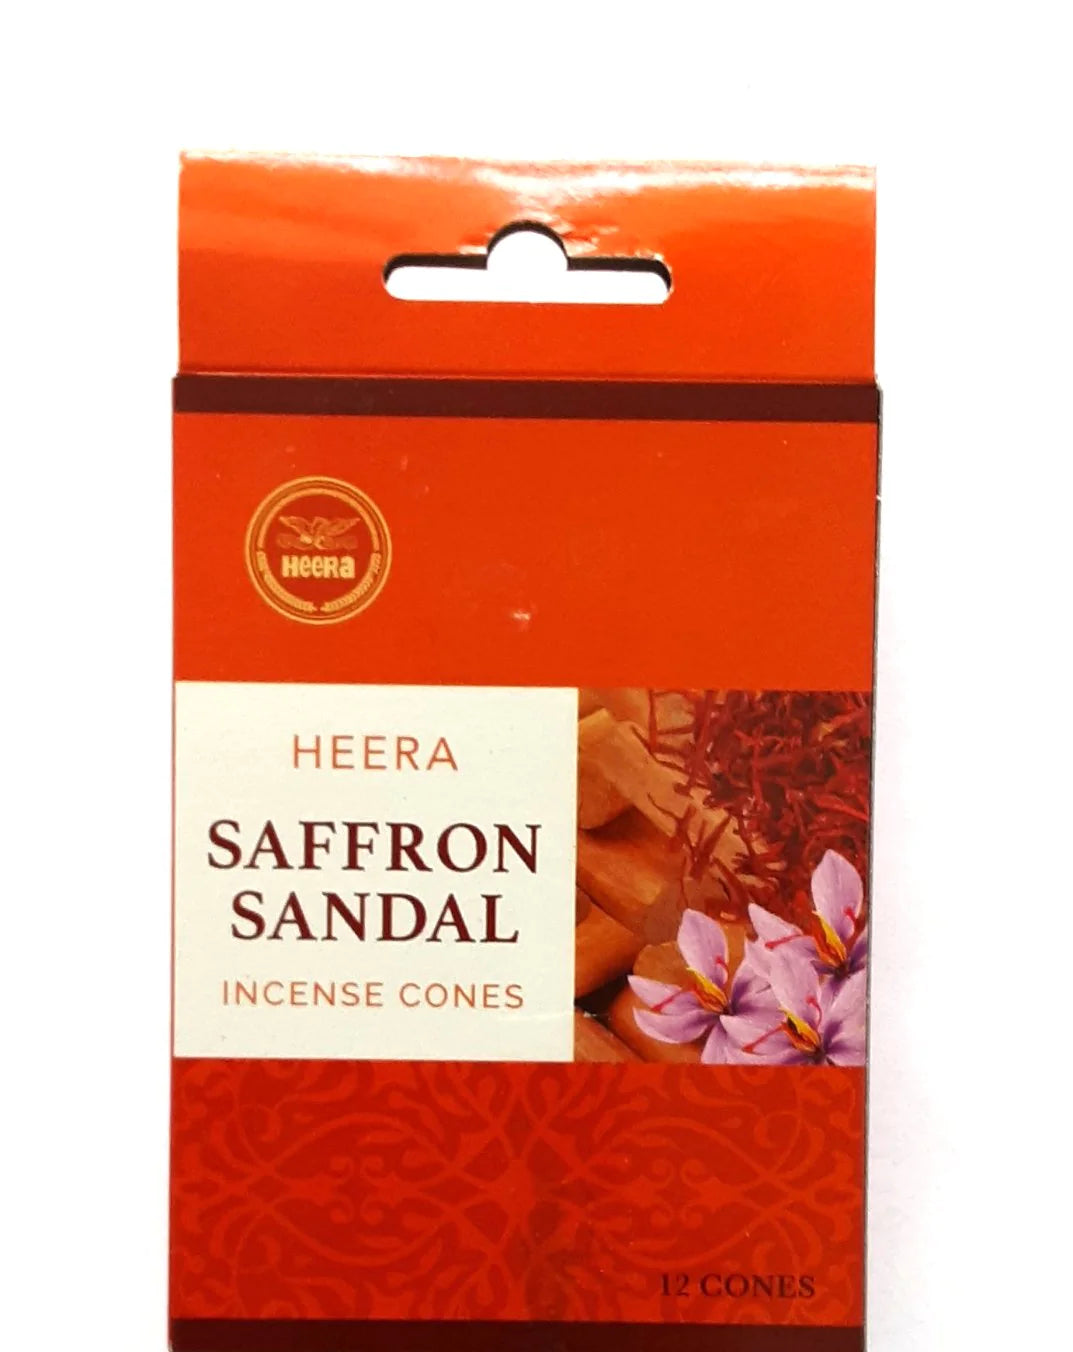 Heera dhoop saffron sandal (Incense cones)